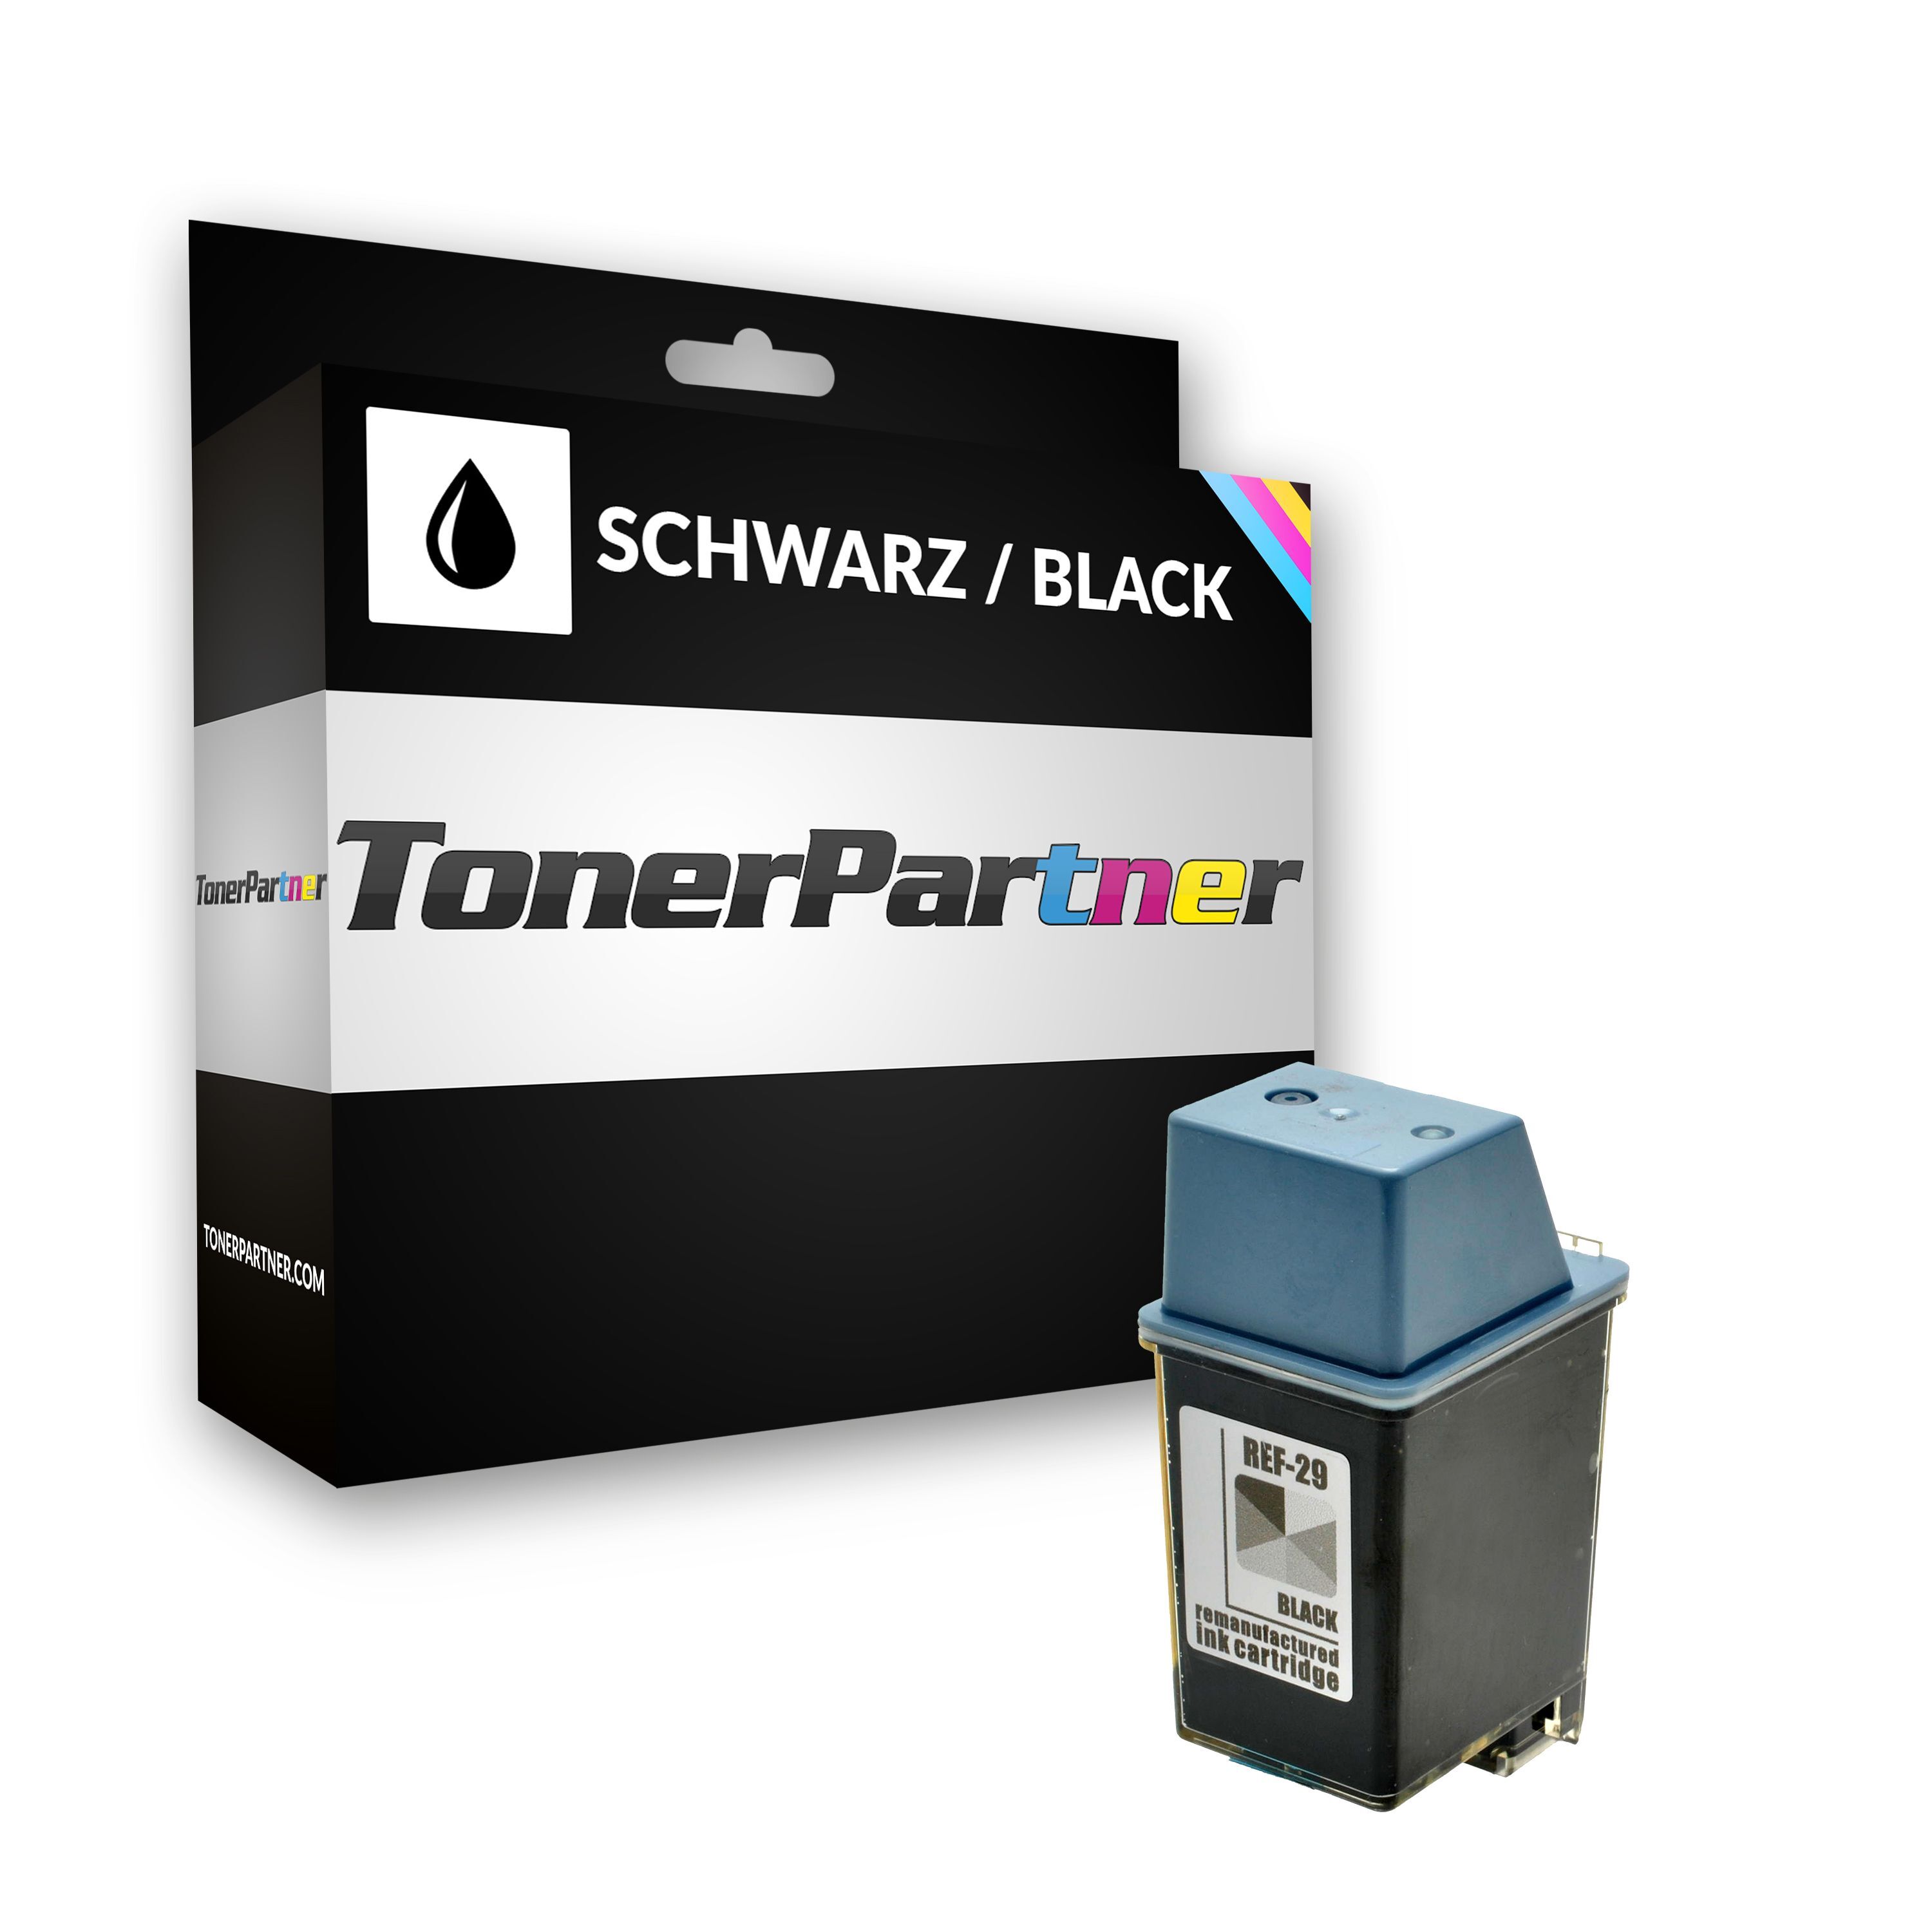 TonerPartner Kompatibel zu HP OfficeJet 710 Tintenpatrone (29 / 51629 AE) schwarz, 650 Seiten, 2,64 Cent pro Seite, Inhalt: 40 ml von TonerPartner